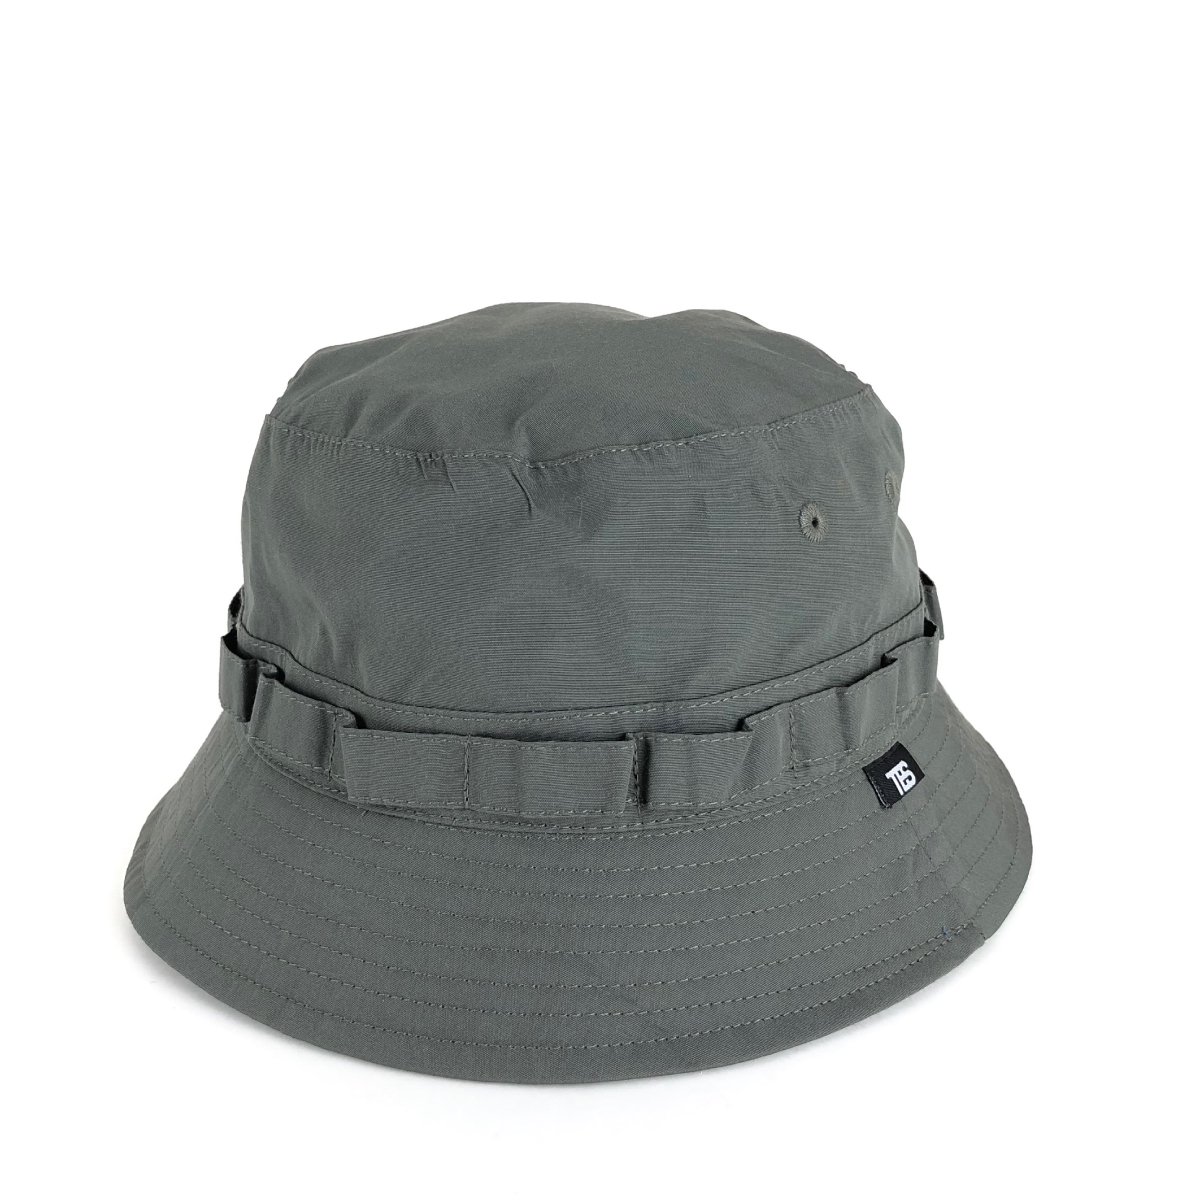 Waterproof Safari Hat